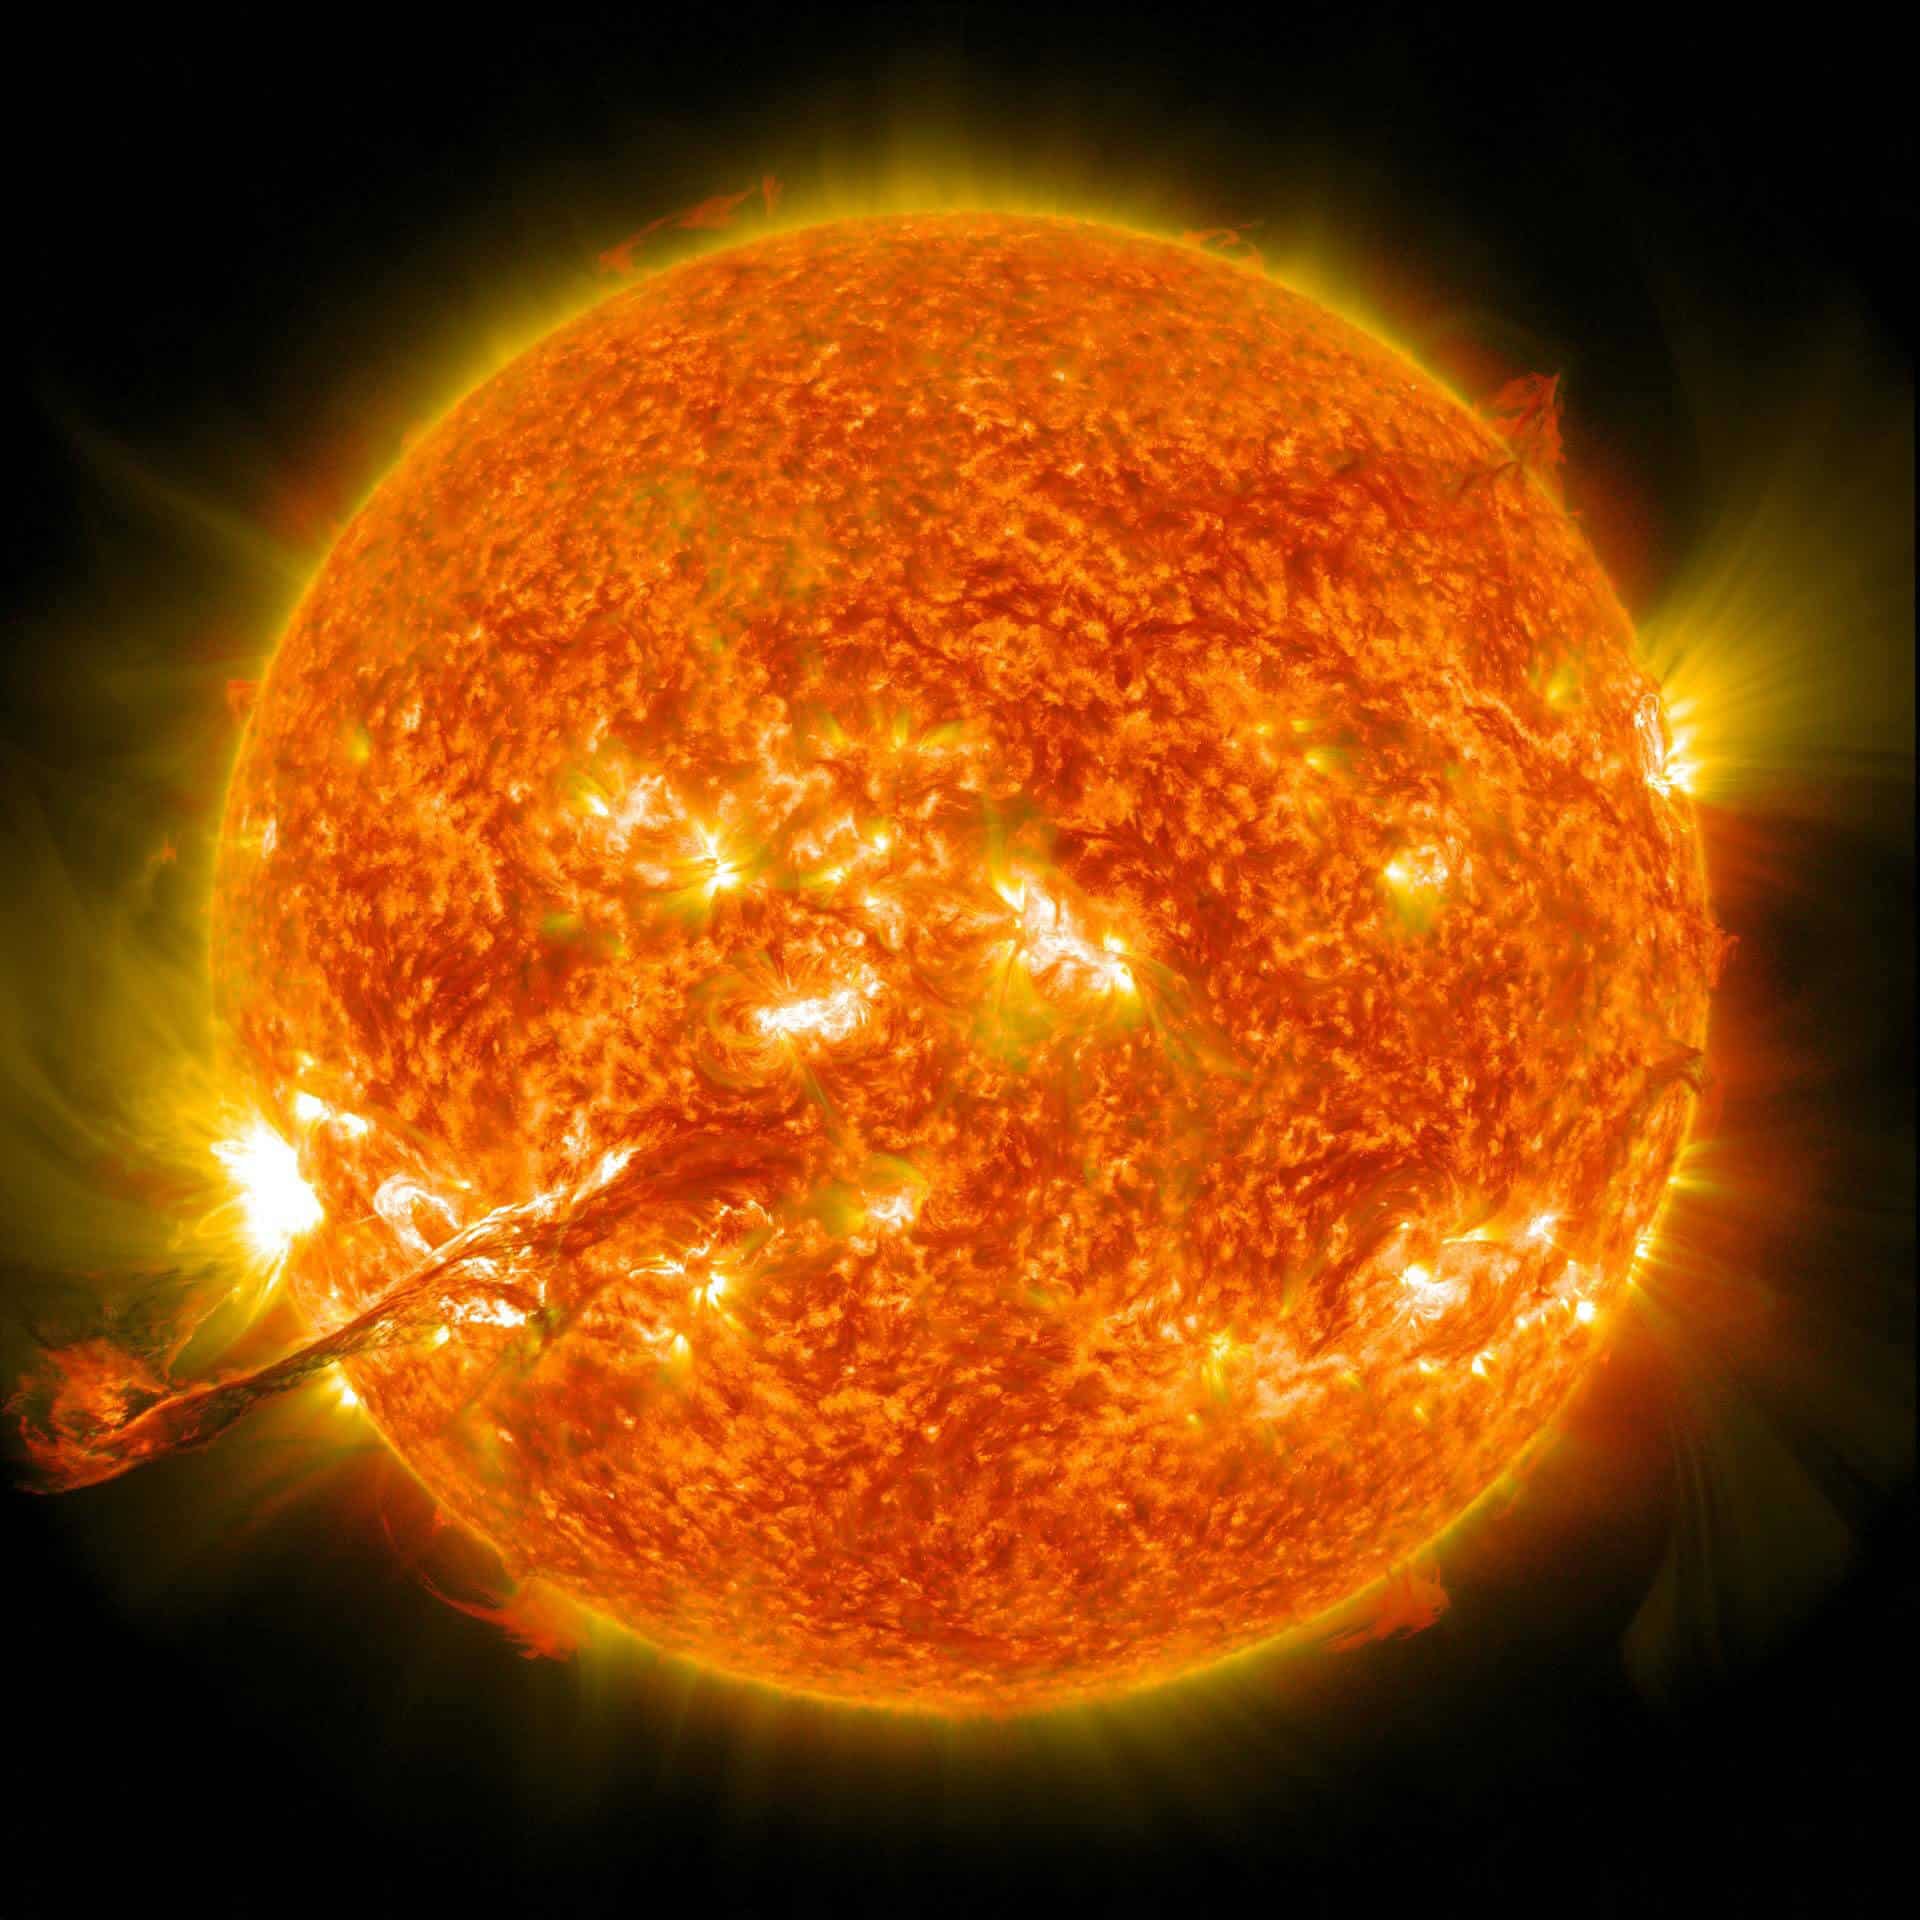 פליטת מסה מהעטרה מתפרצת מהשמש שלנו ב-31 באוגוסט 2012. צילום: NASA/GSFC/SDO